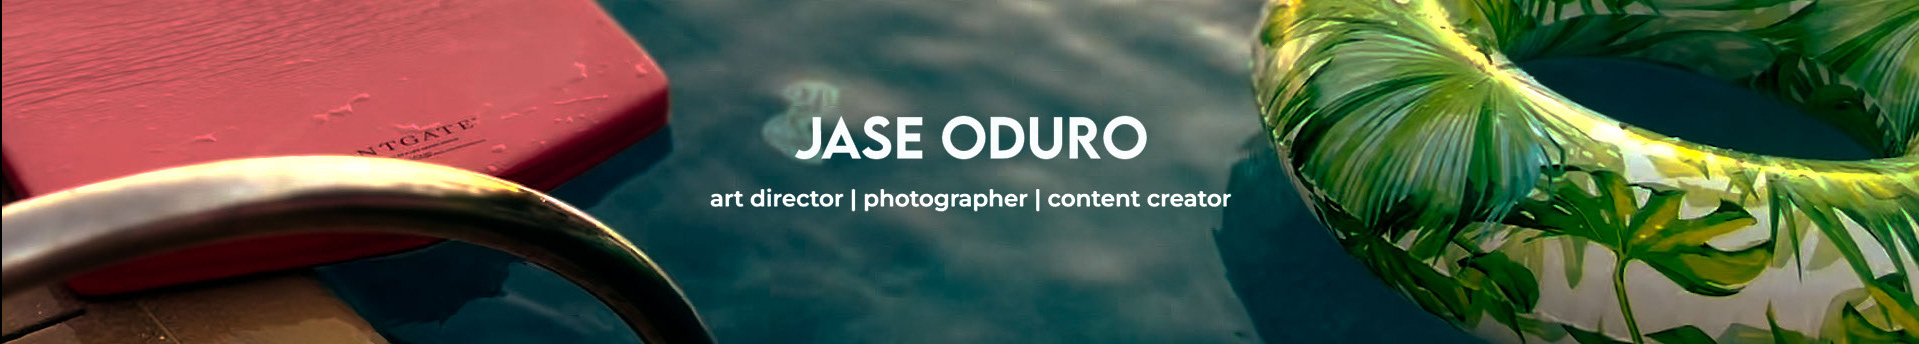 Jase Oduro's profile banner